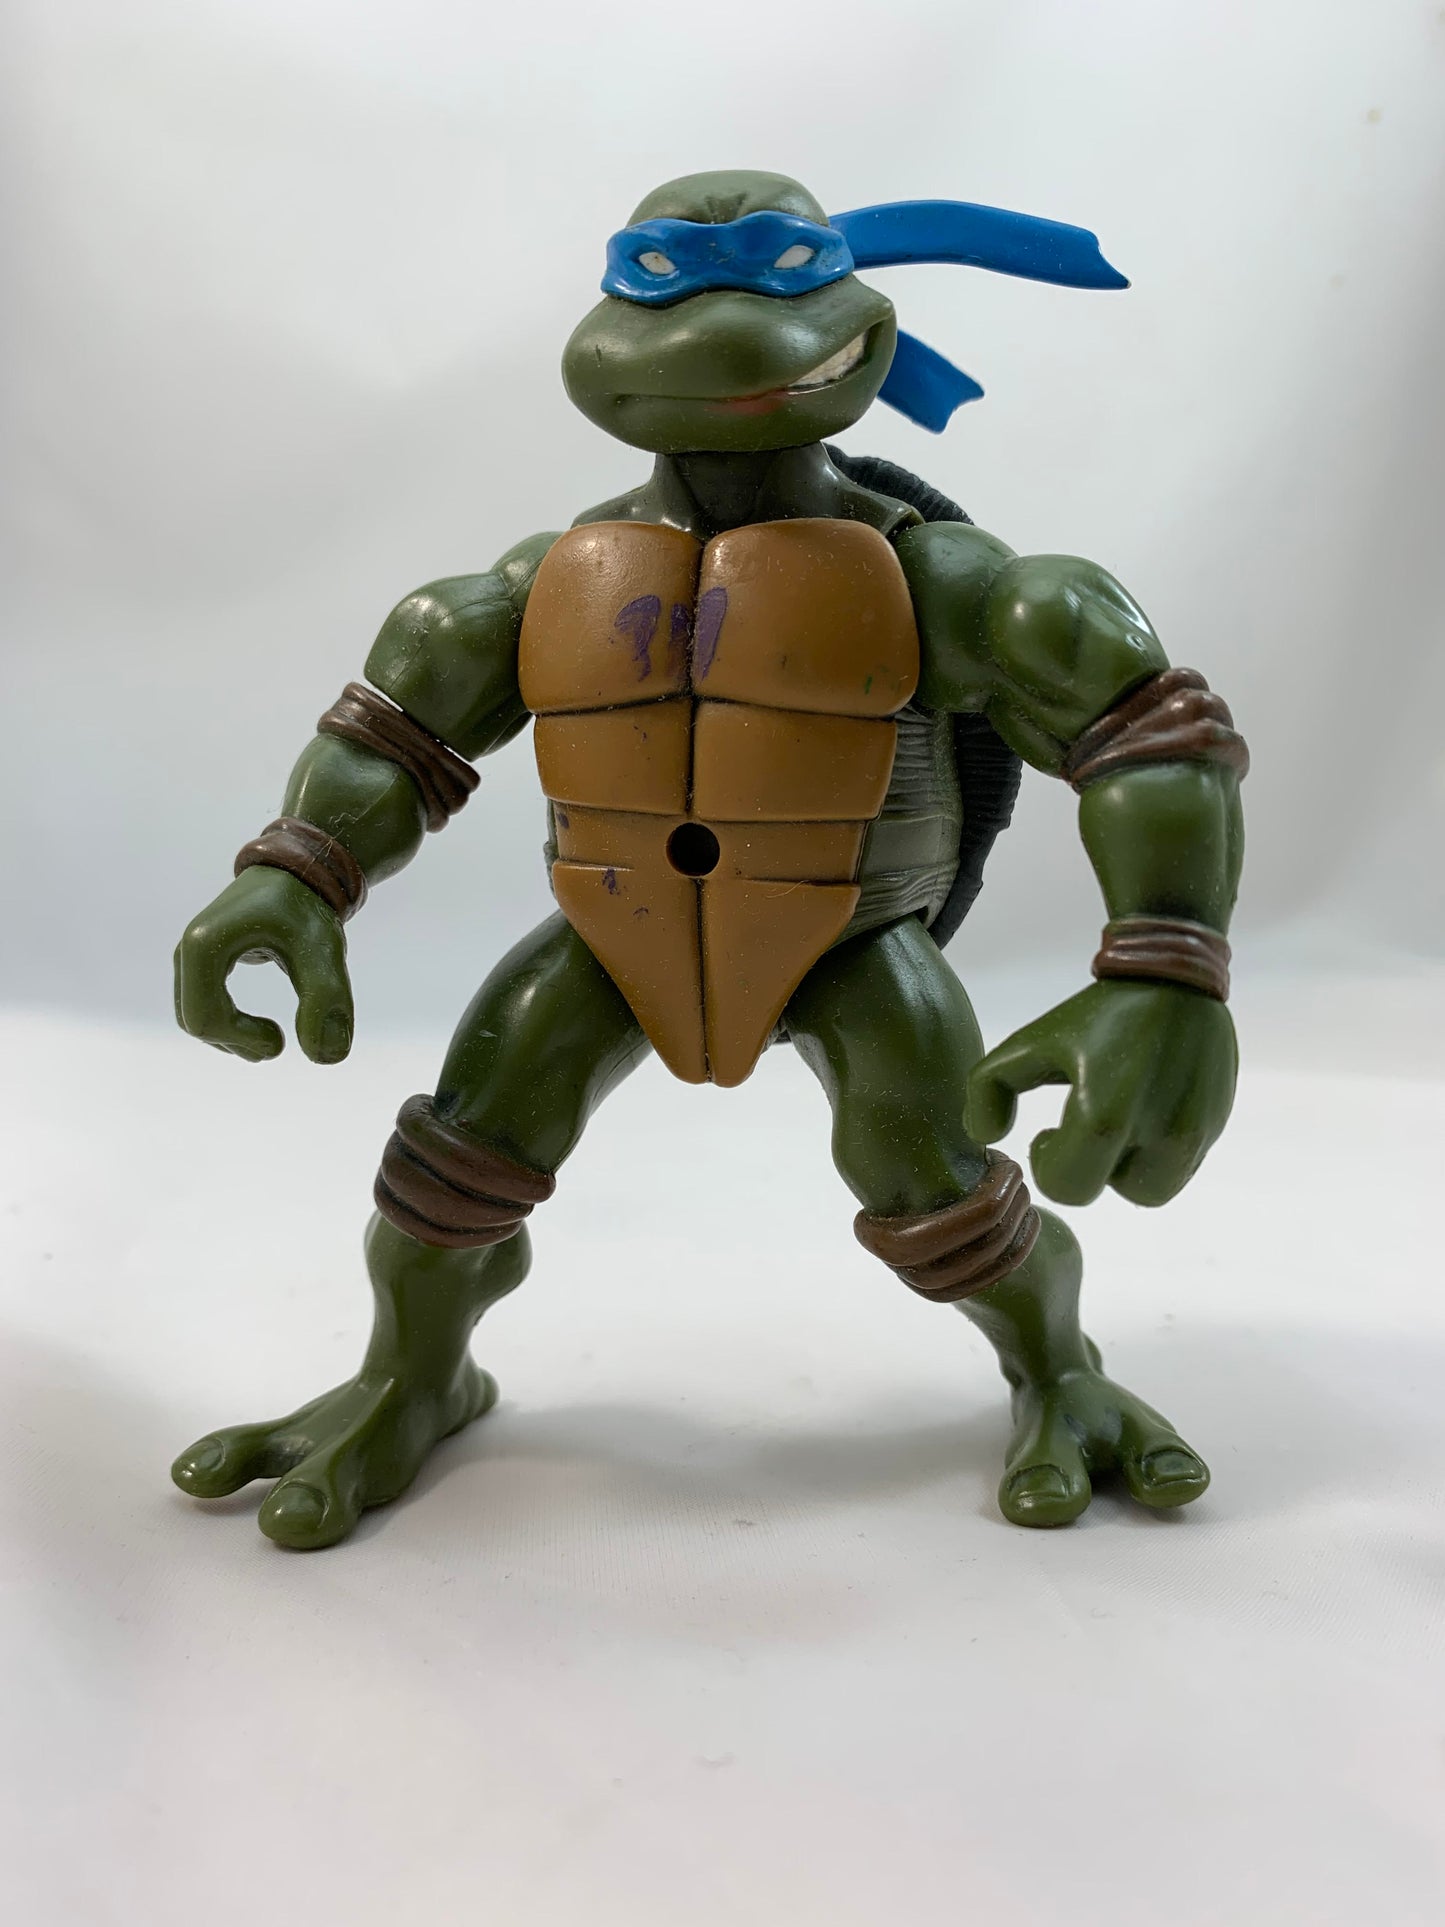 Playmates Teenage Mutant Ninja Turtles TMNT LEONARDO 2003 - Loose